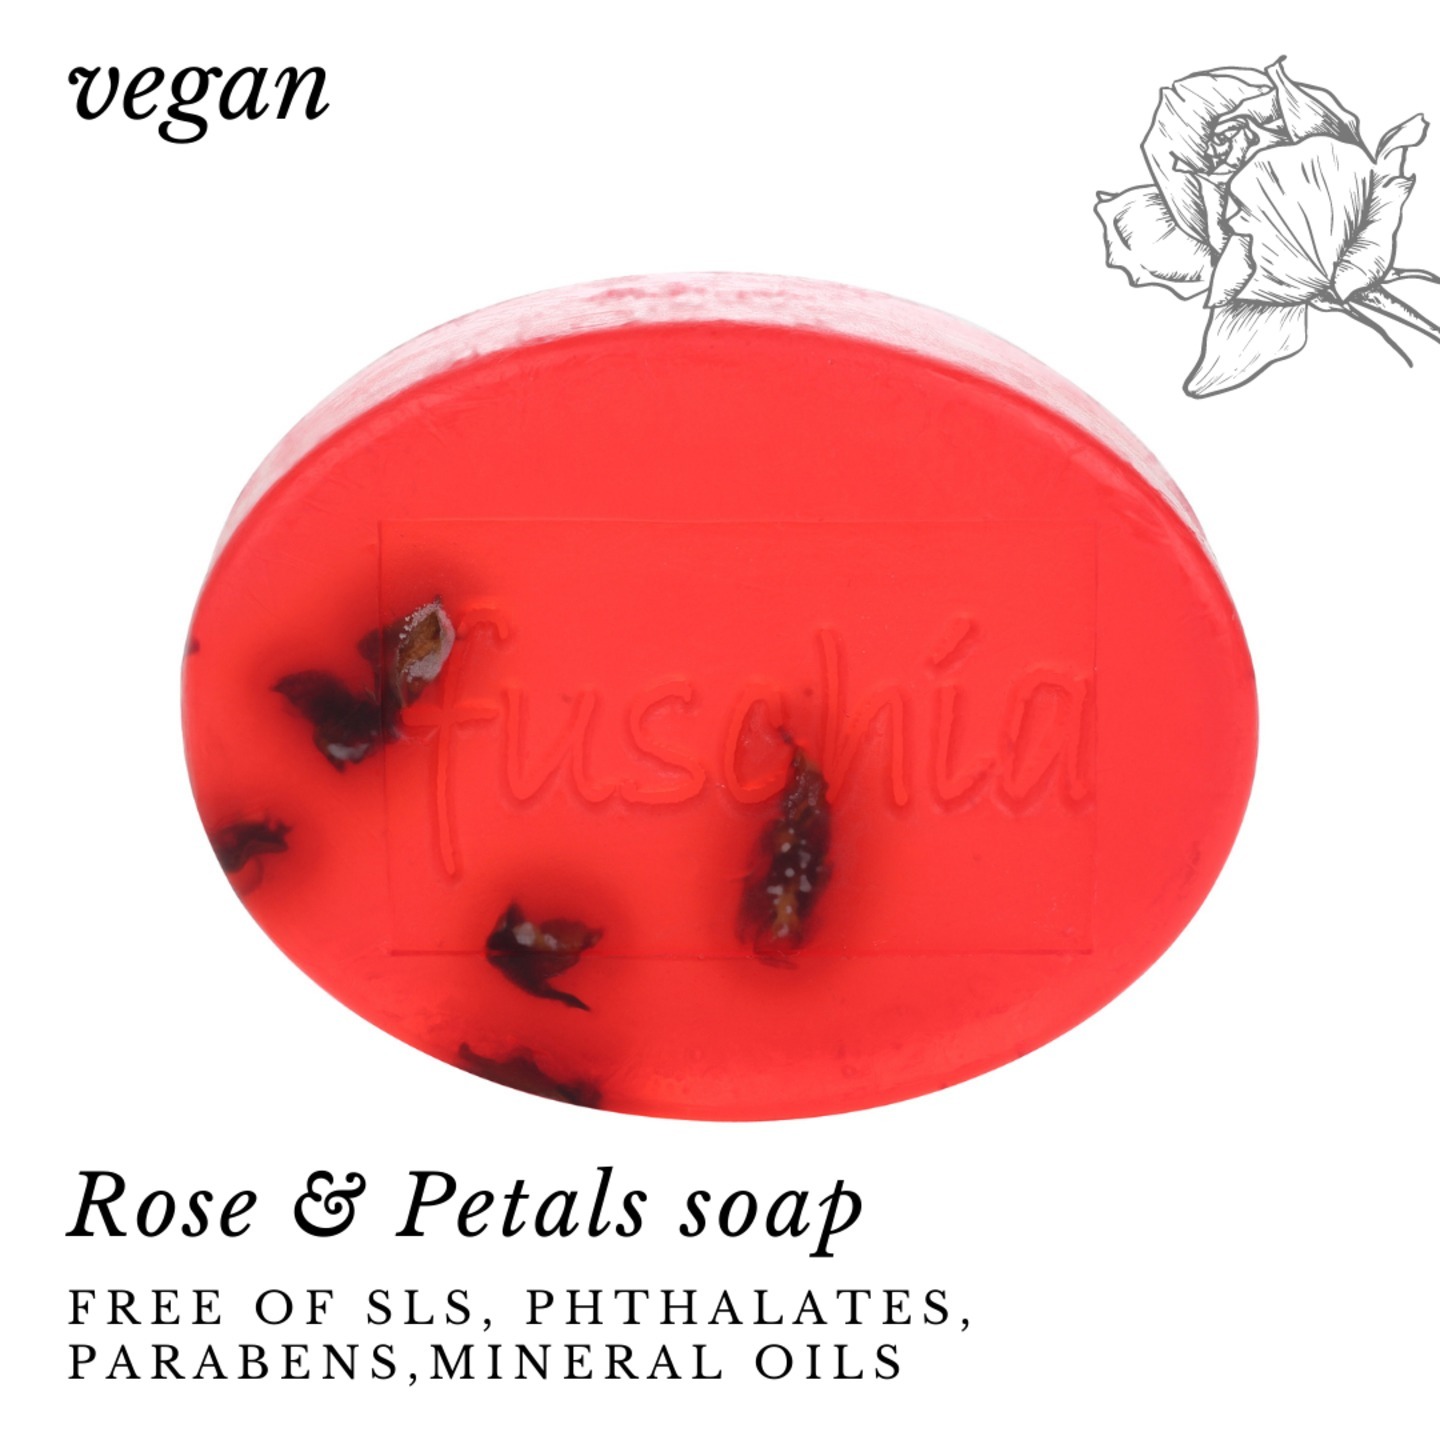 Fuschia - Rose & Petals Natural Handmade Herbal Soap